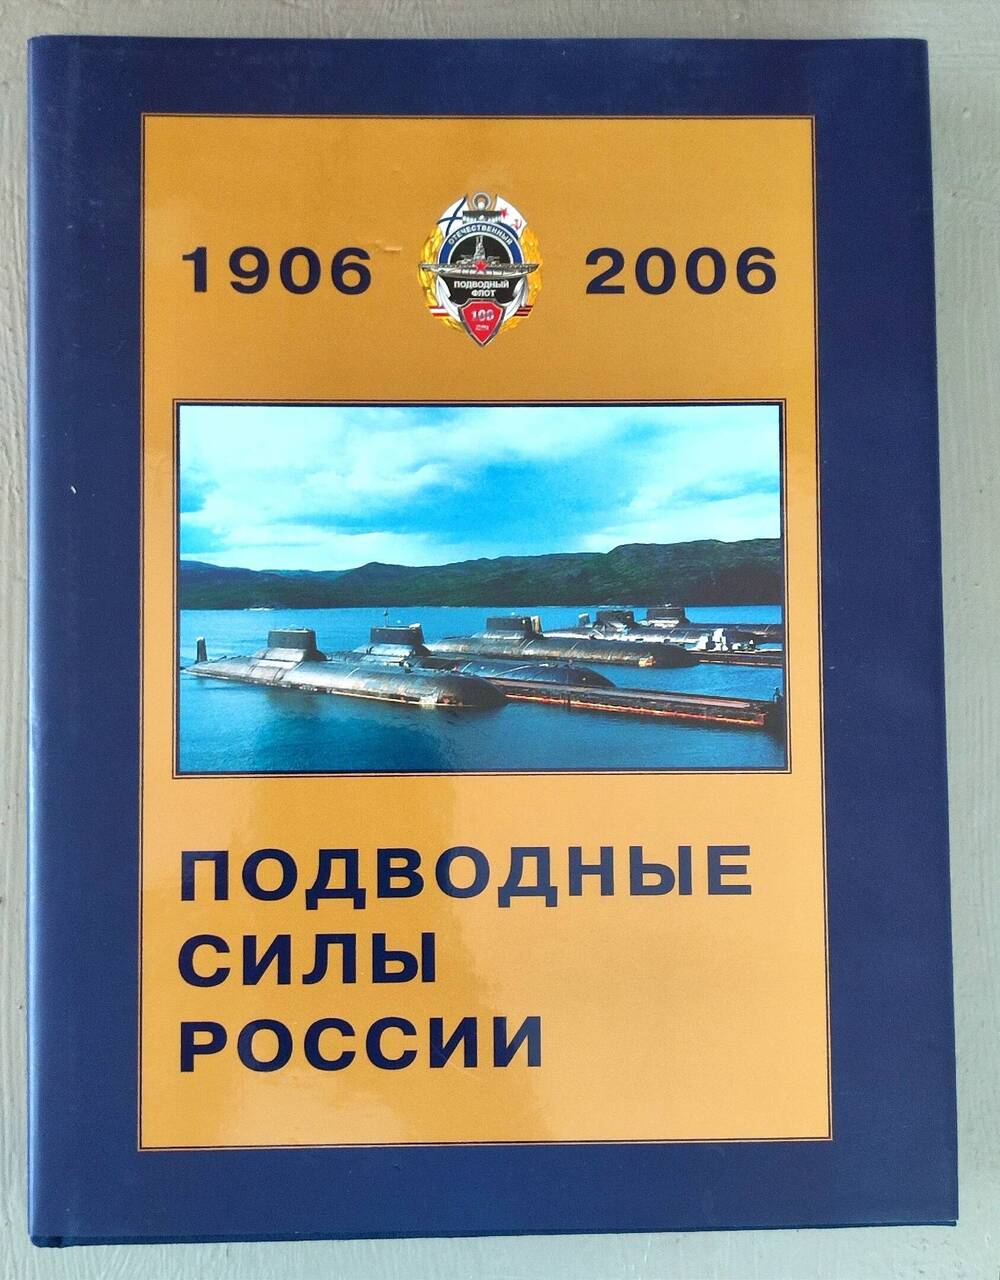 Книга - энциклопедия Подводные силы России 1906-2006